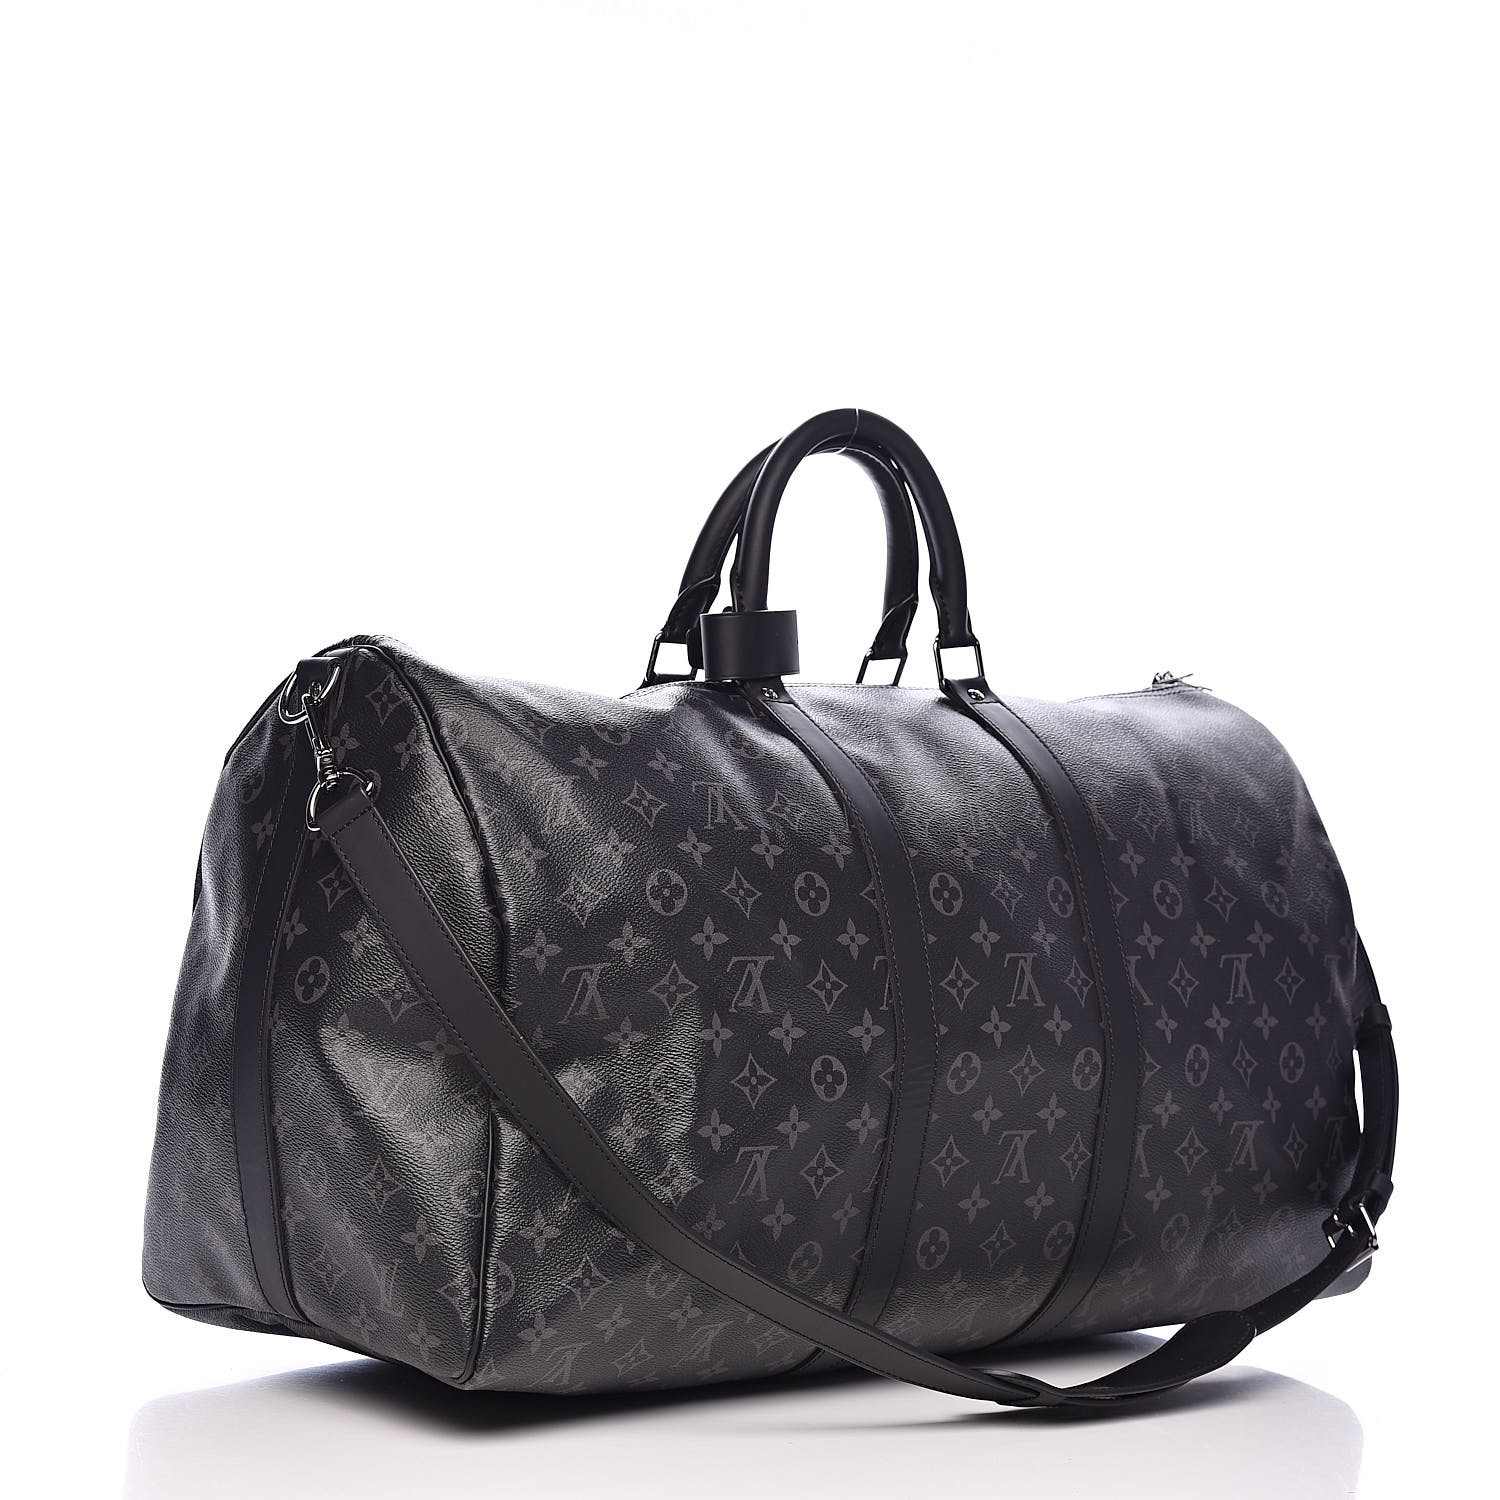 Louis Vuitton Keepall Bandouliere Size 55 Noir M40605 Monogram Eclipse